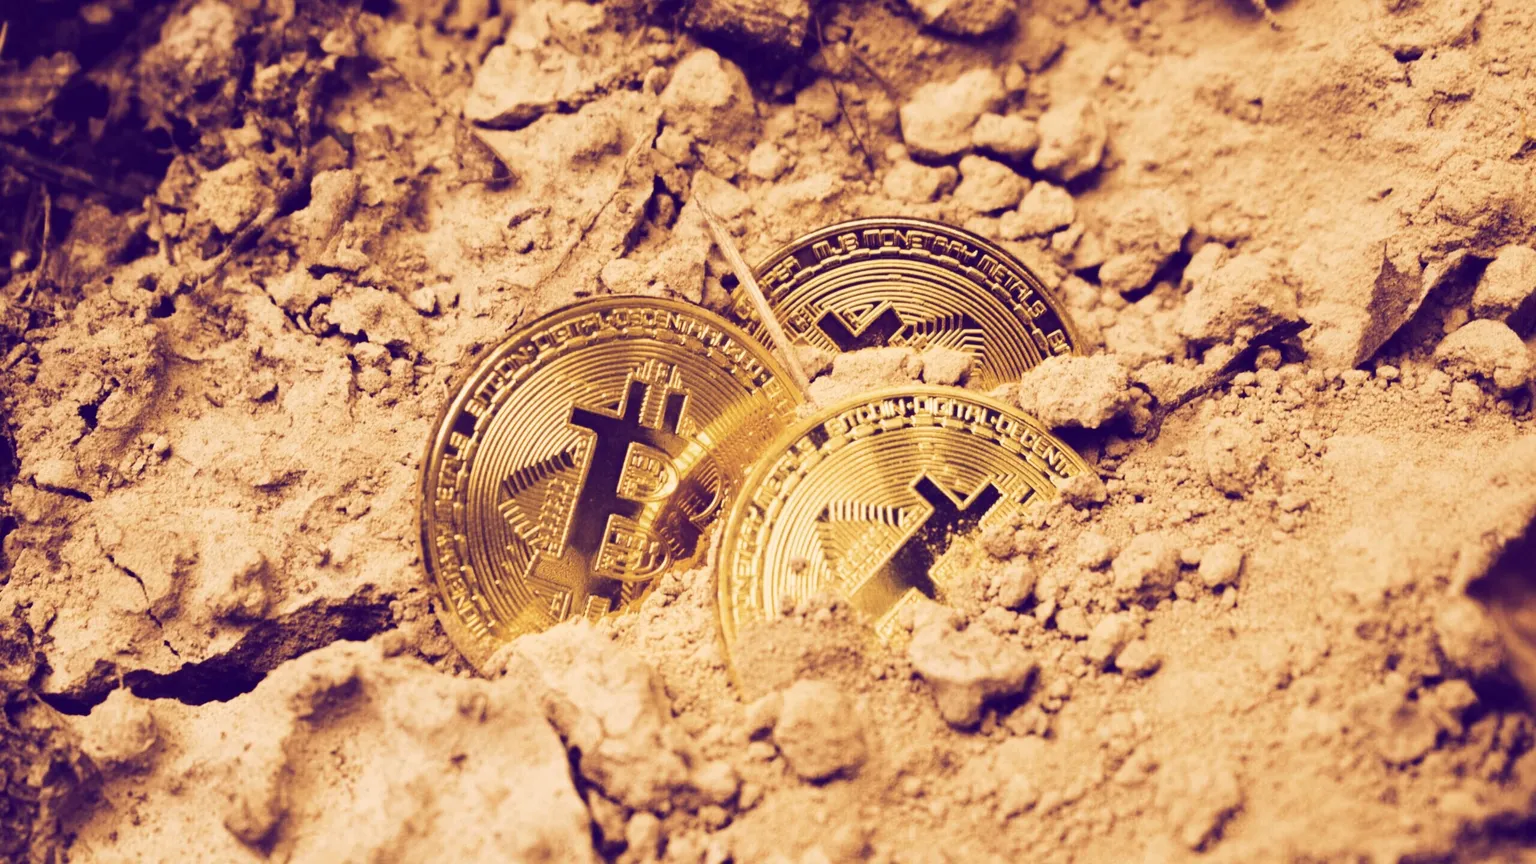 Imagen alusiva a minería de Bitcoin. Imagen: Unsplash